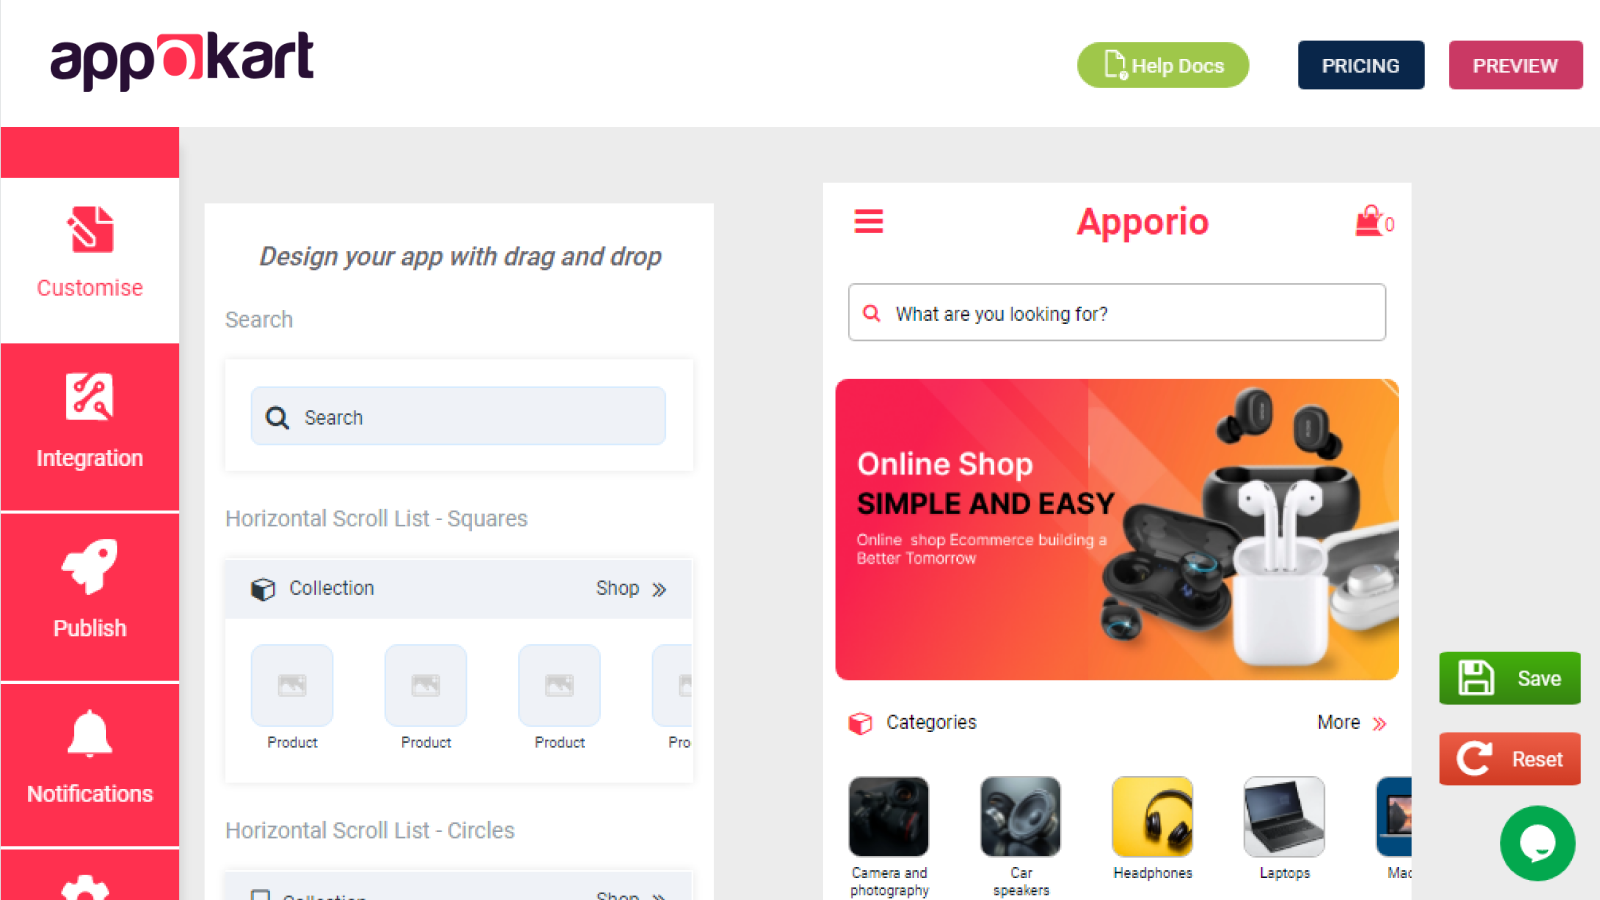 AppOkart‑ Mobile App Builder